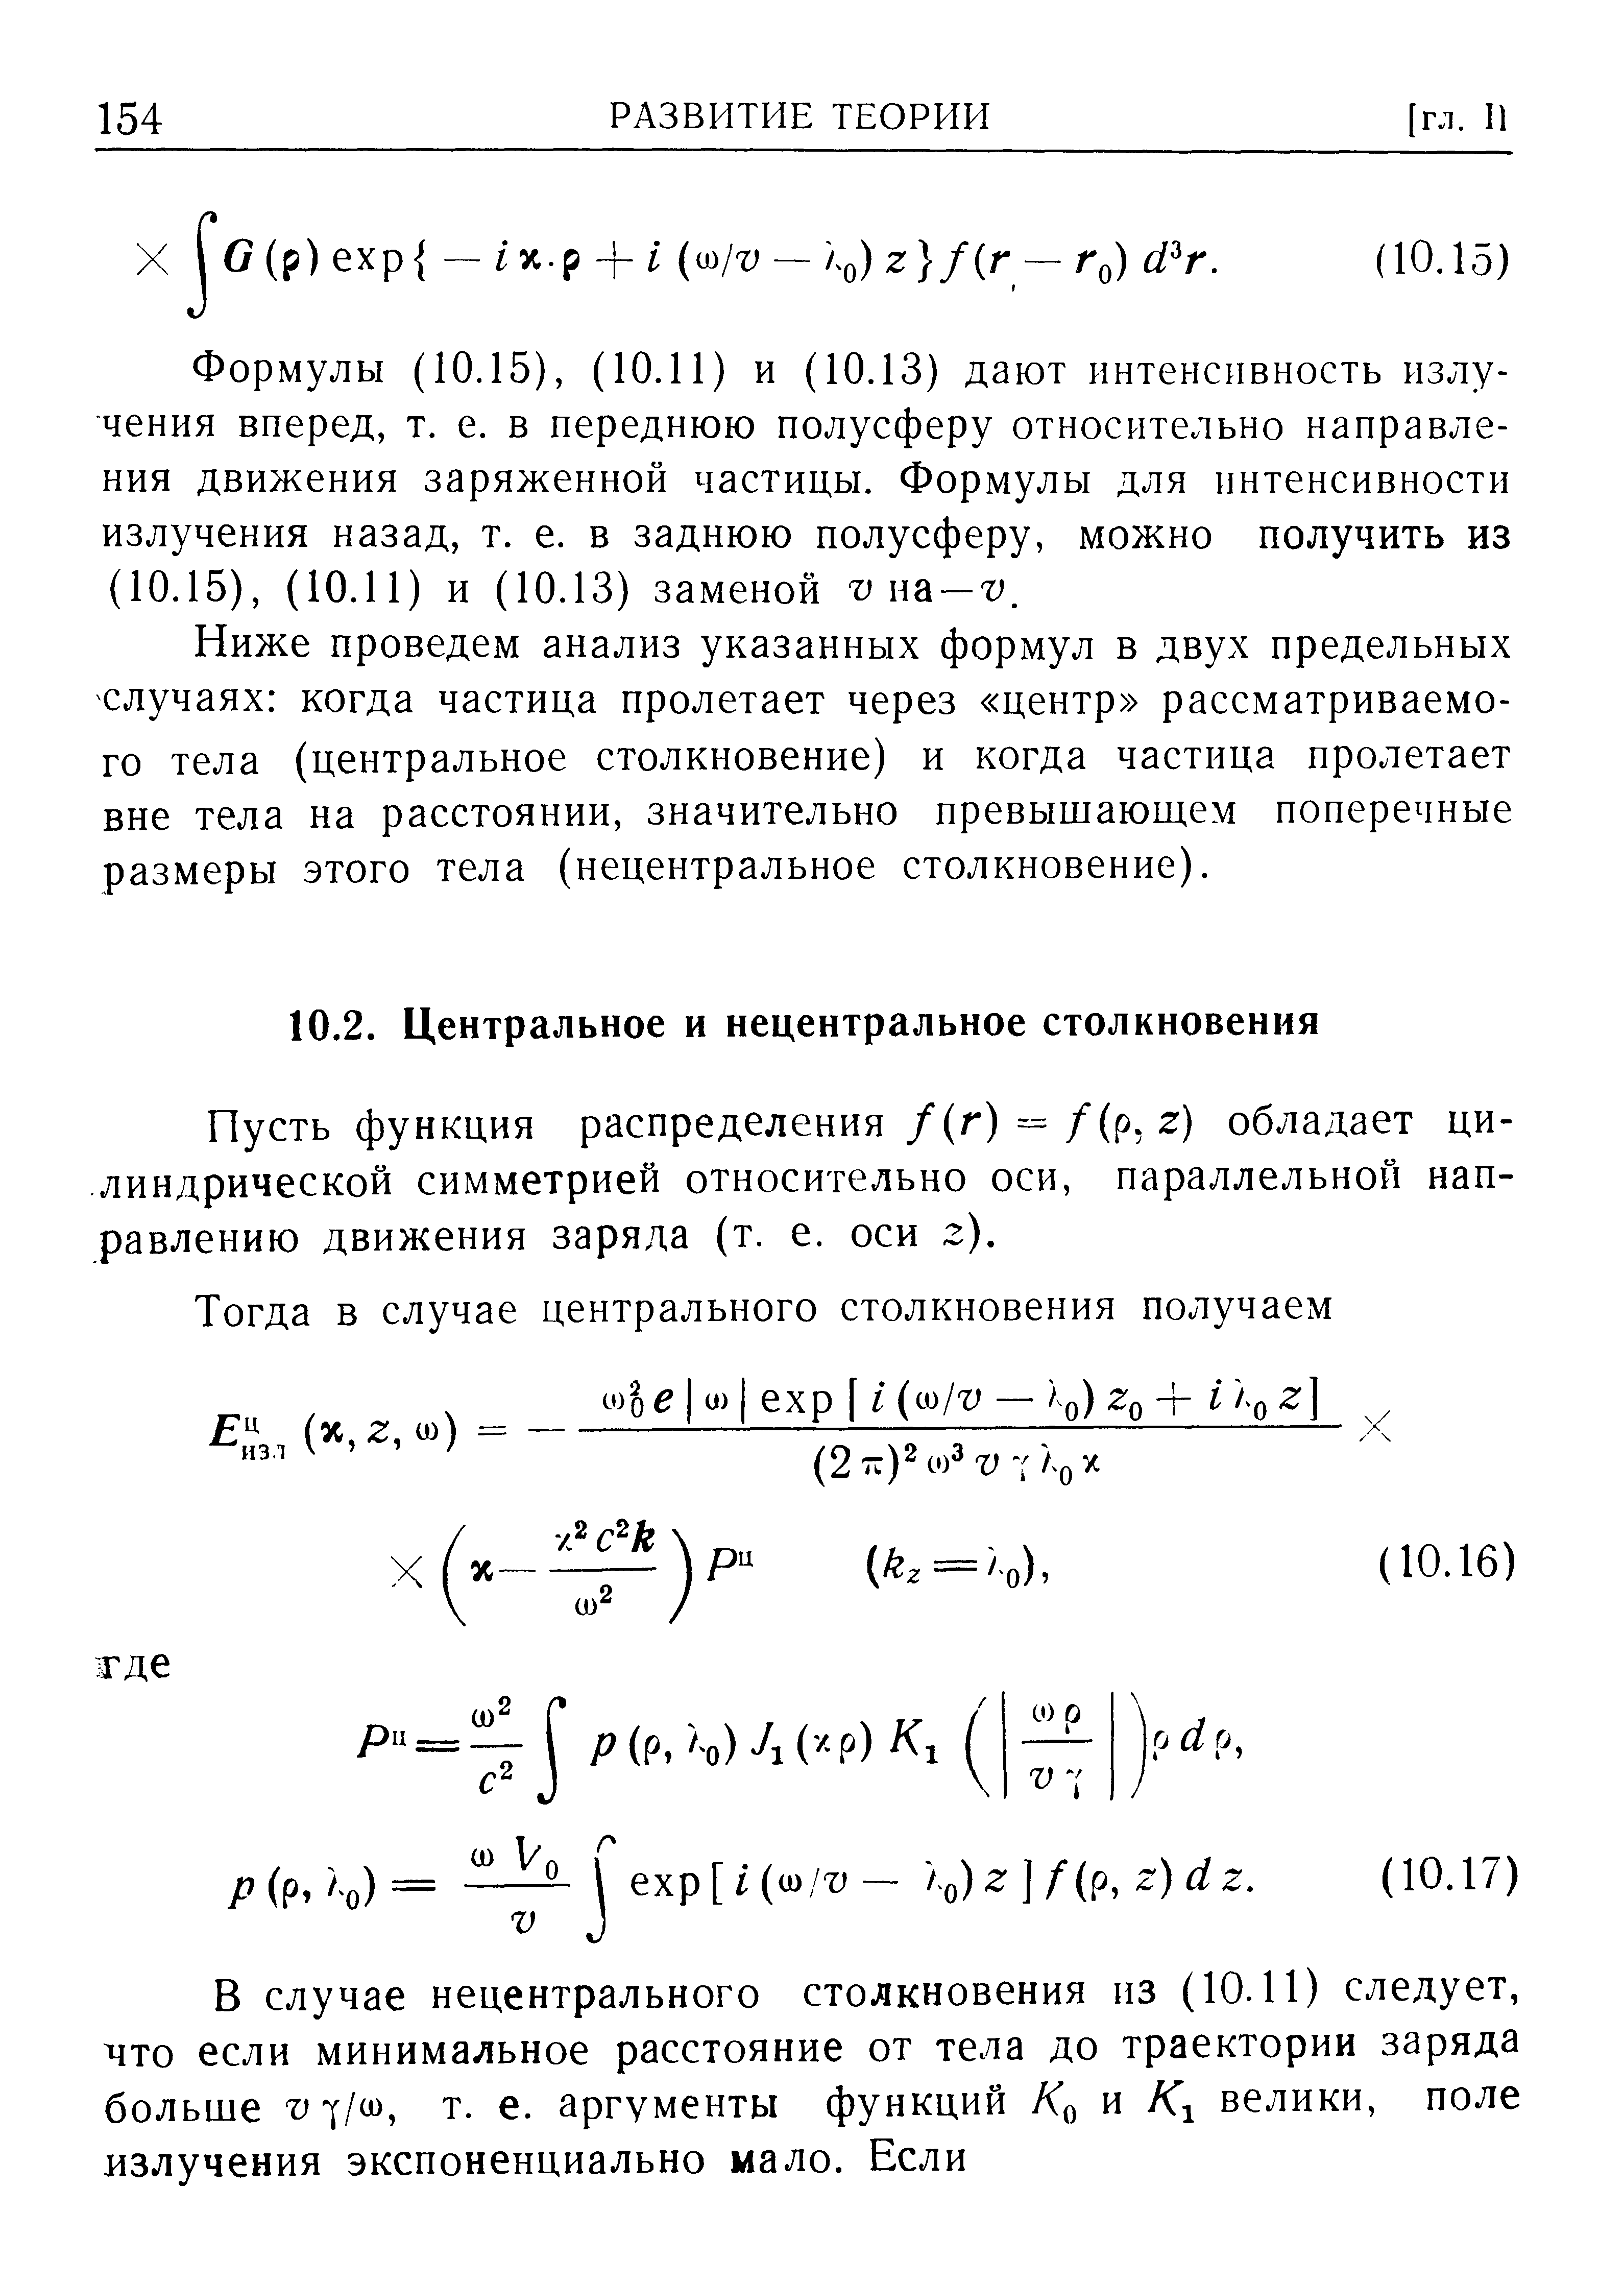 Пусть функция распределения /(г) =-/(р, г) обладает цилиндрической симметрией относительно оси, параллельной направлению движения заряда (т. е. оси г).
